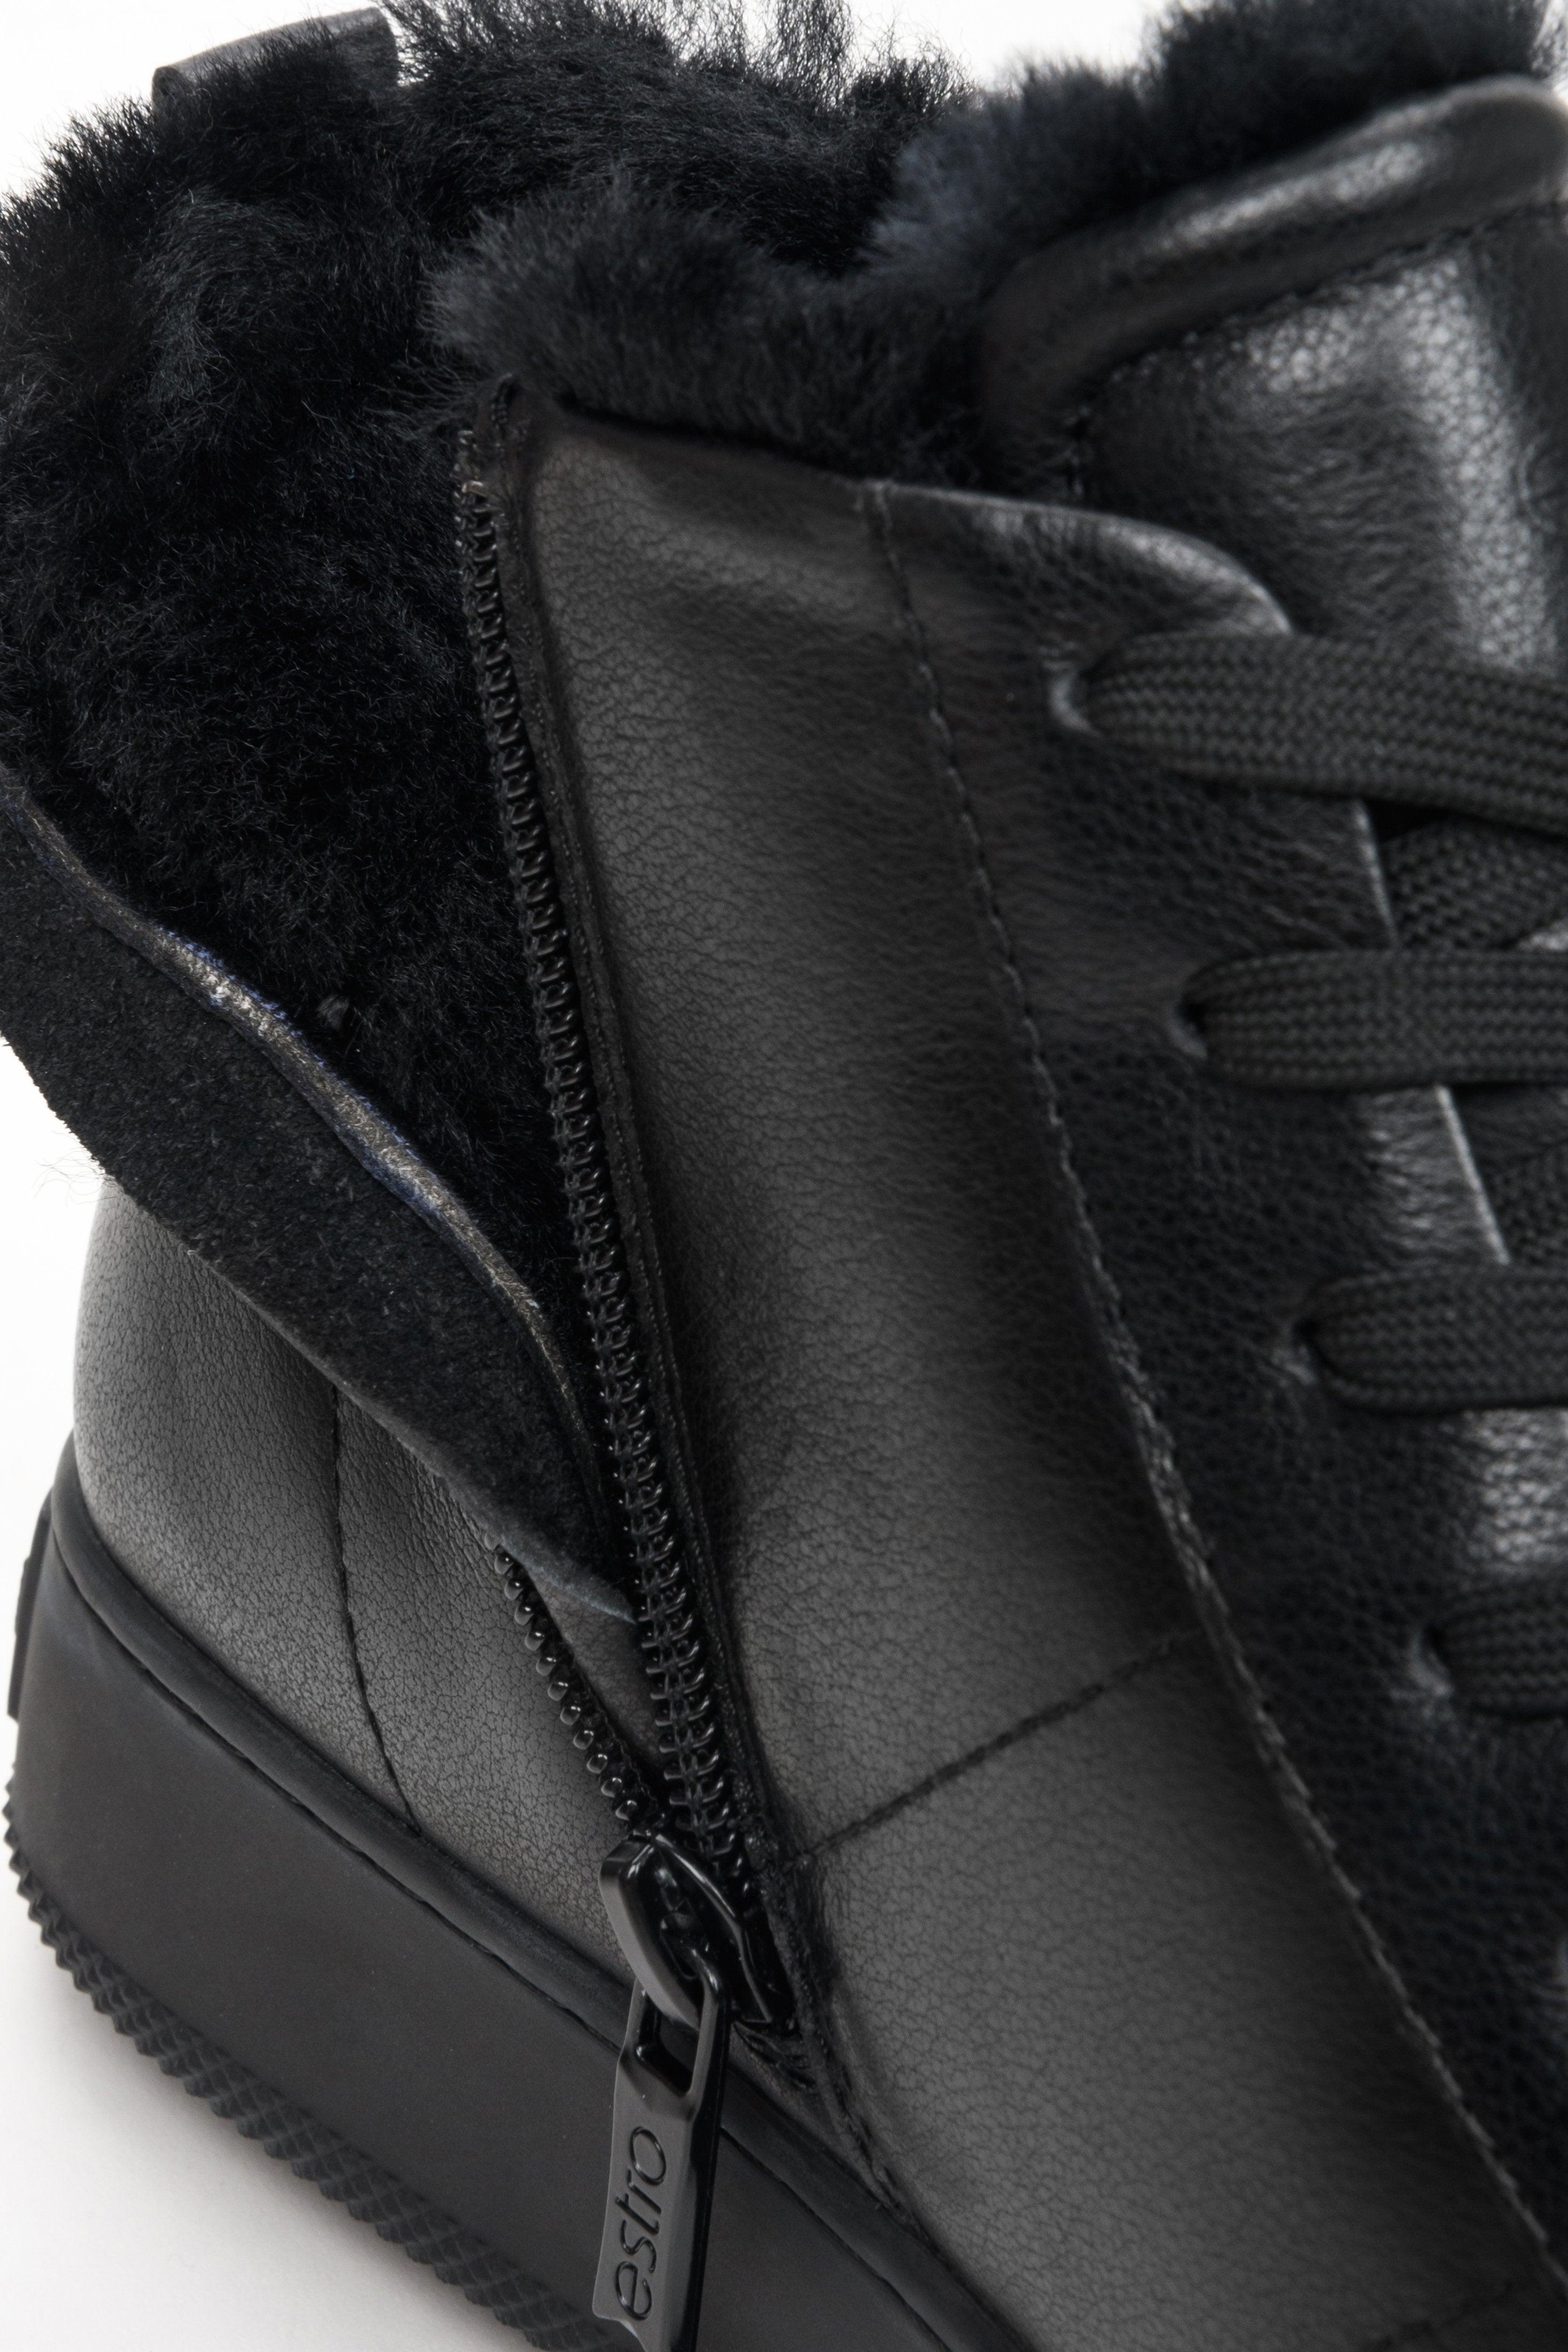 Damskie, zimowe sneakersy w kolorze czarnym - zbliżenie na miękkie wypełnienie buta.